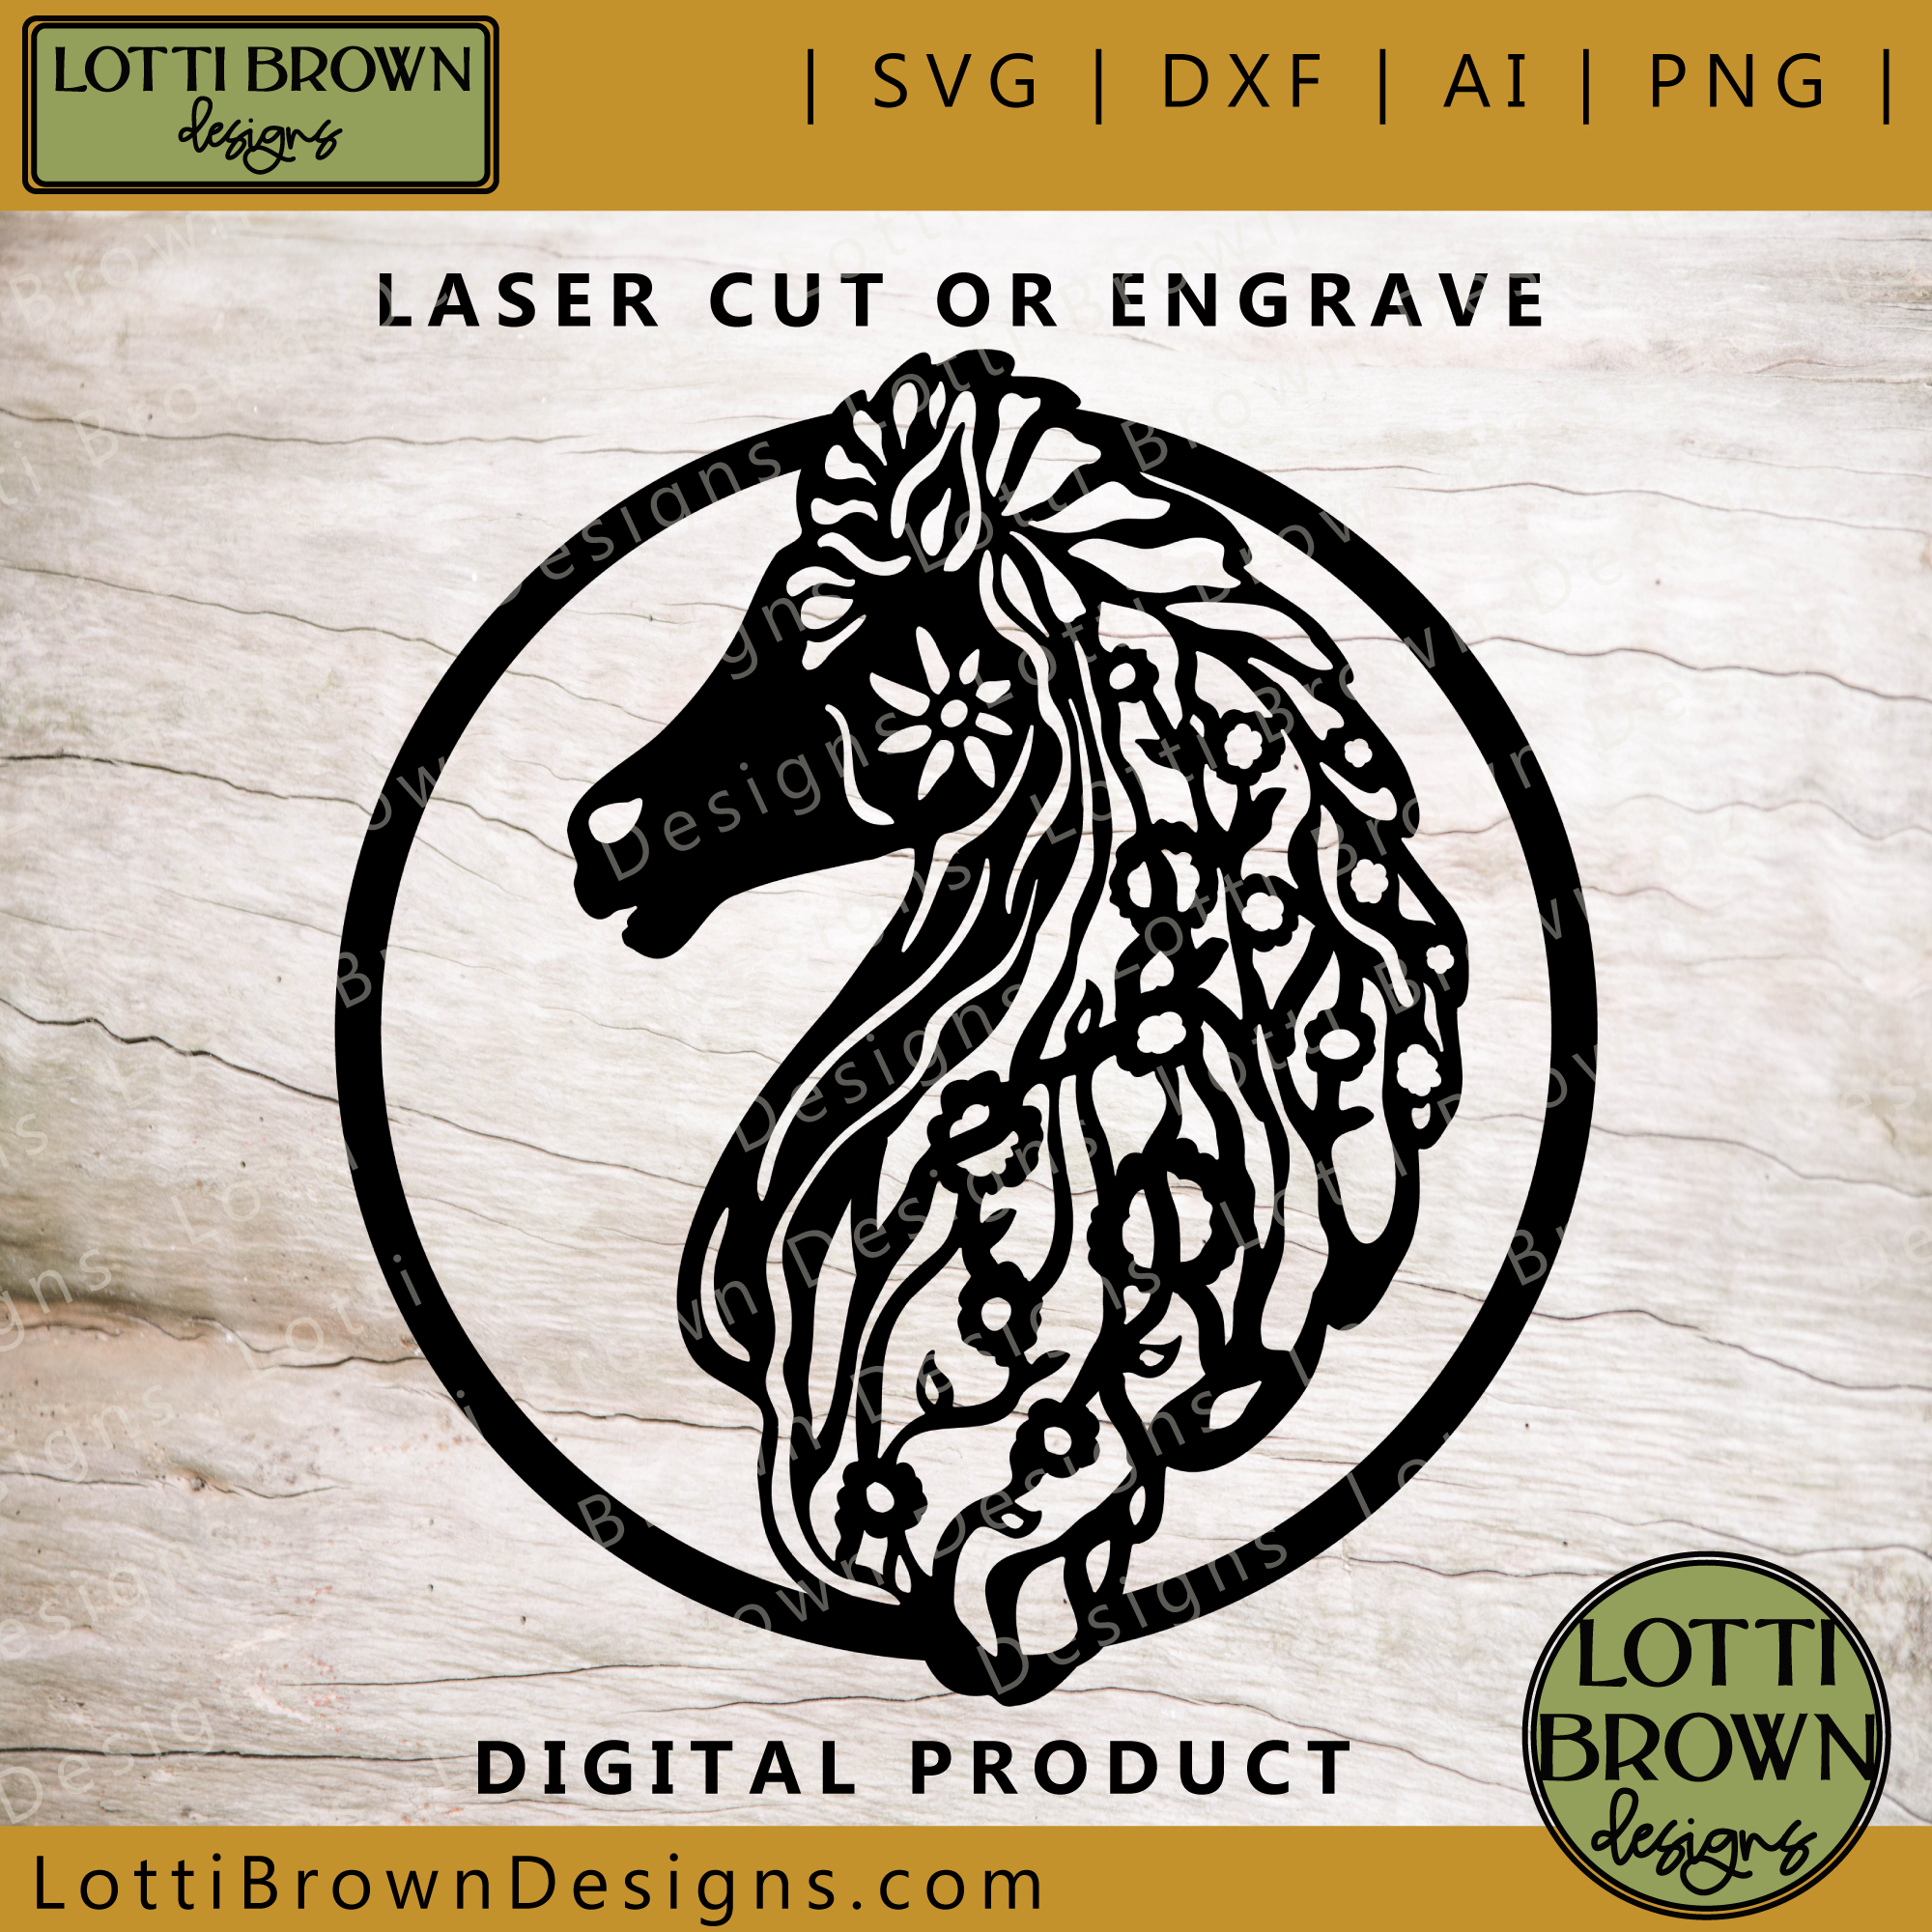 Laser cut or engrave horse head SVG design